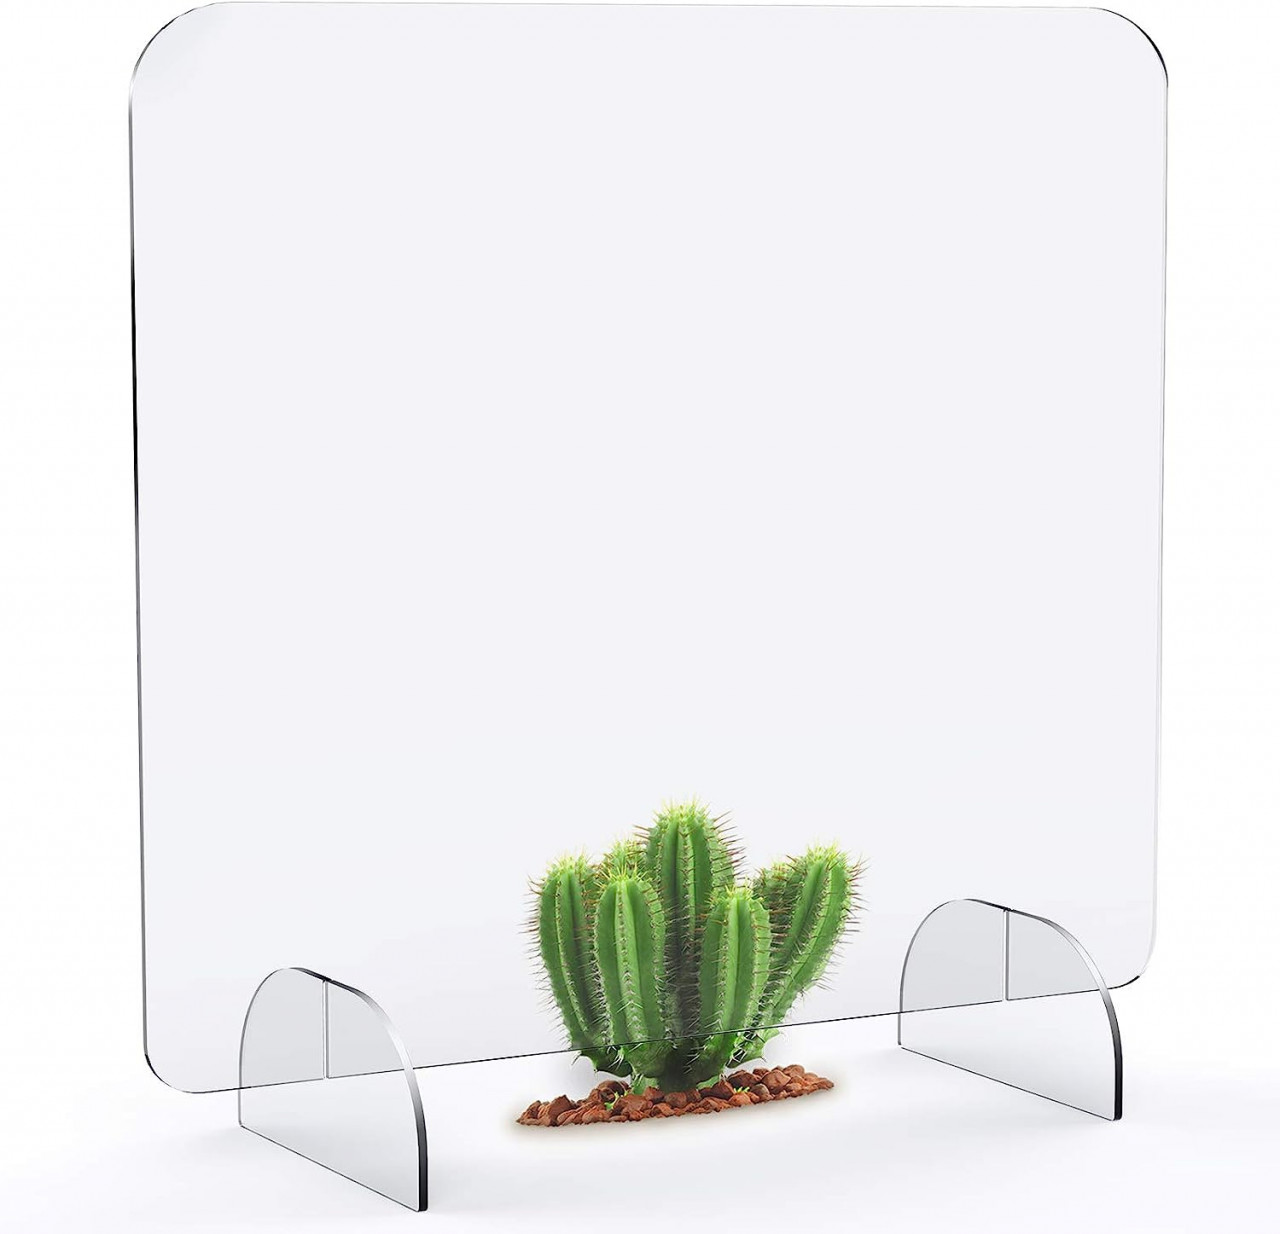 Despartitor pentru birou LF LOIAAFEL, plexiglas, transparent, 69,3 x 60 x 60 cm chilipirul-zilei.ro/